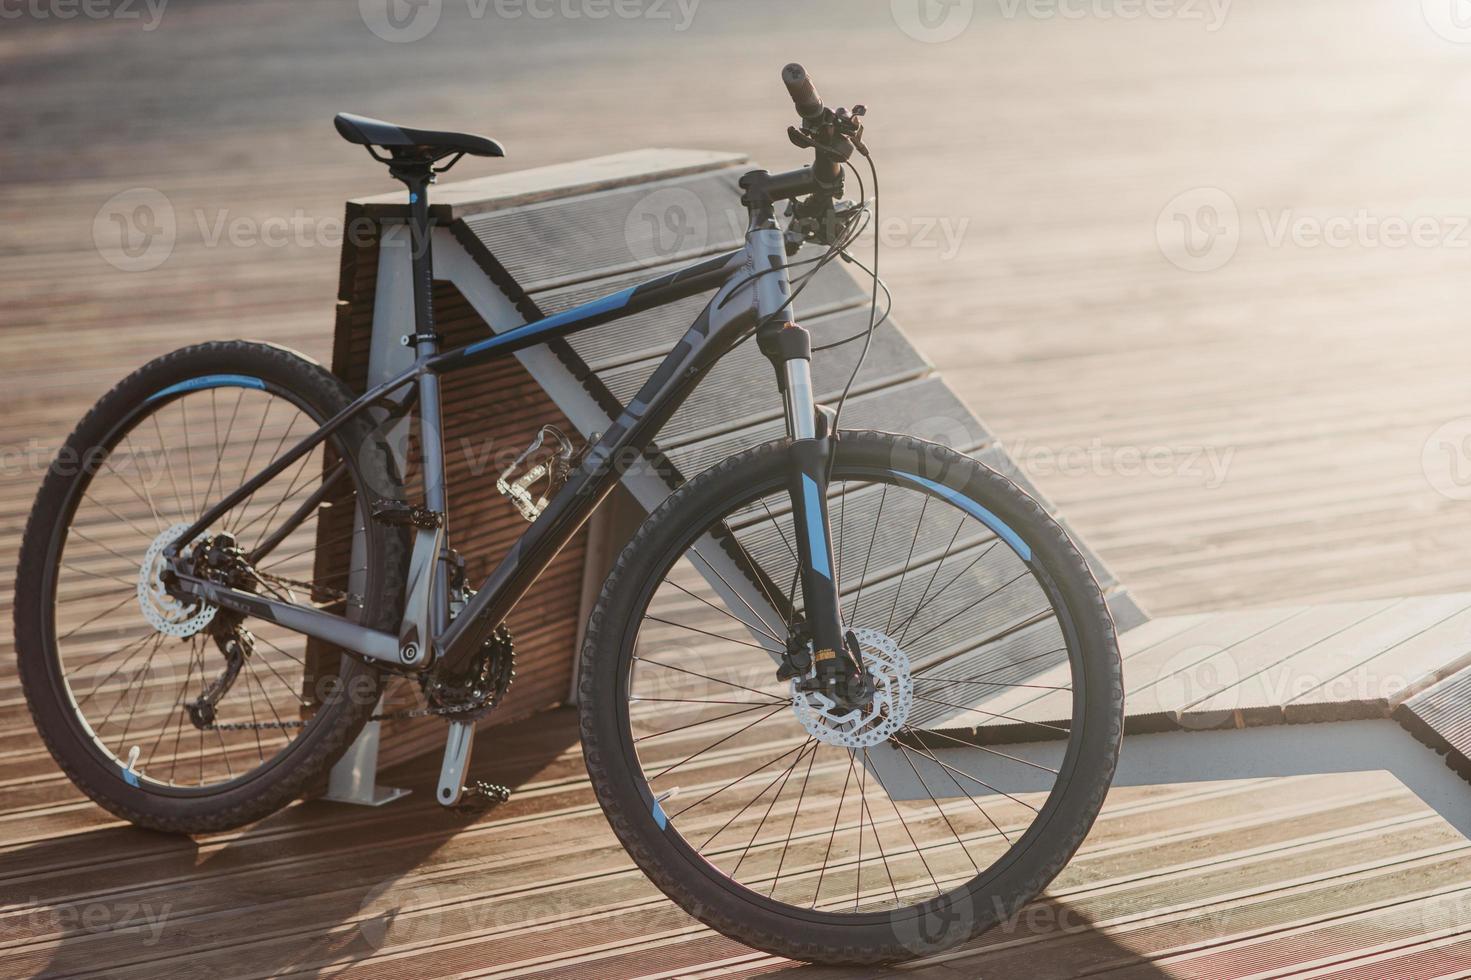 Bicicleta deportiva al aire libre para tus viajes y aventuras. bicicleta de carreras afuera sin gente. concepto de ciclismo y transporte ecológico. foto